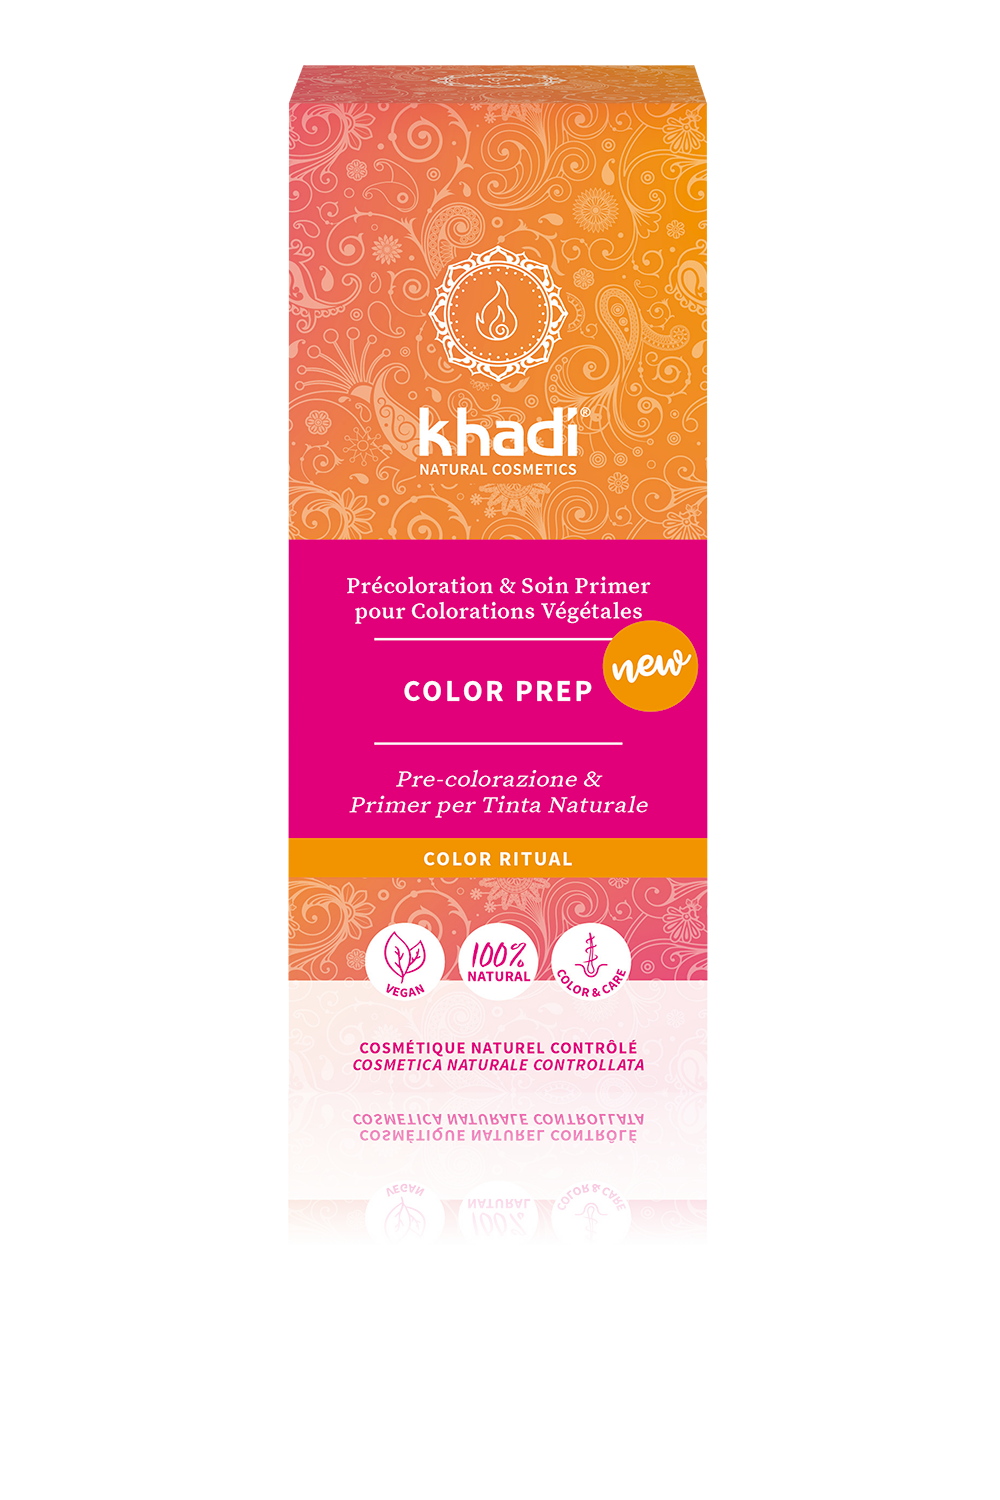 Khadi Color Prep (voorbehandeling), voor twee behandelingen (2 x 50gr), vooraf aan haarkleuring te gebruiken